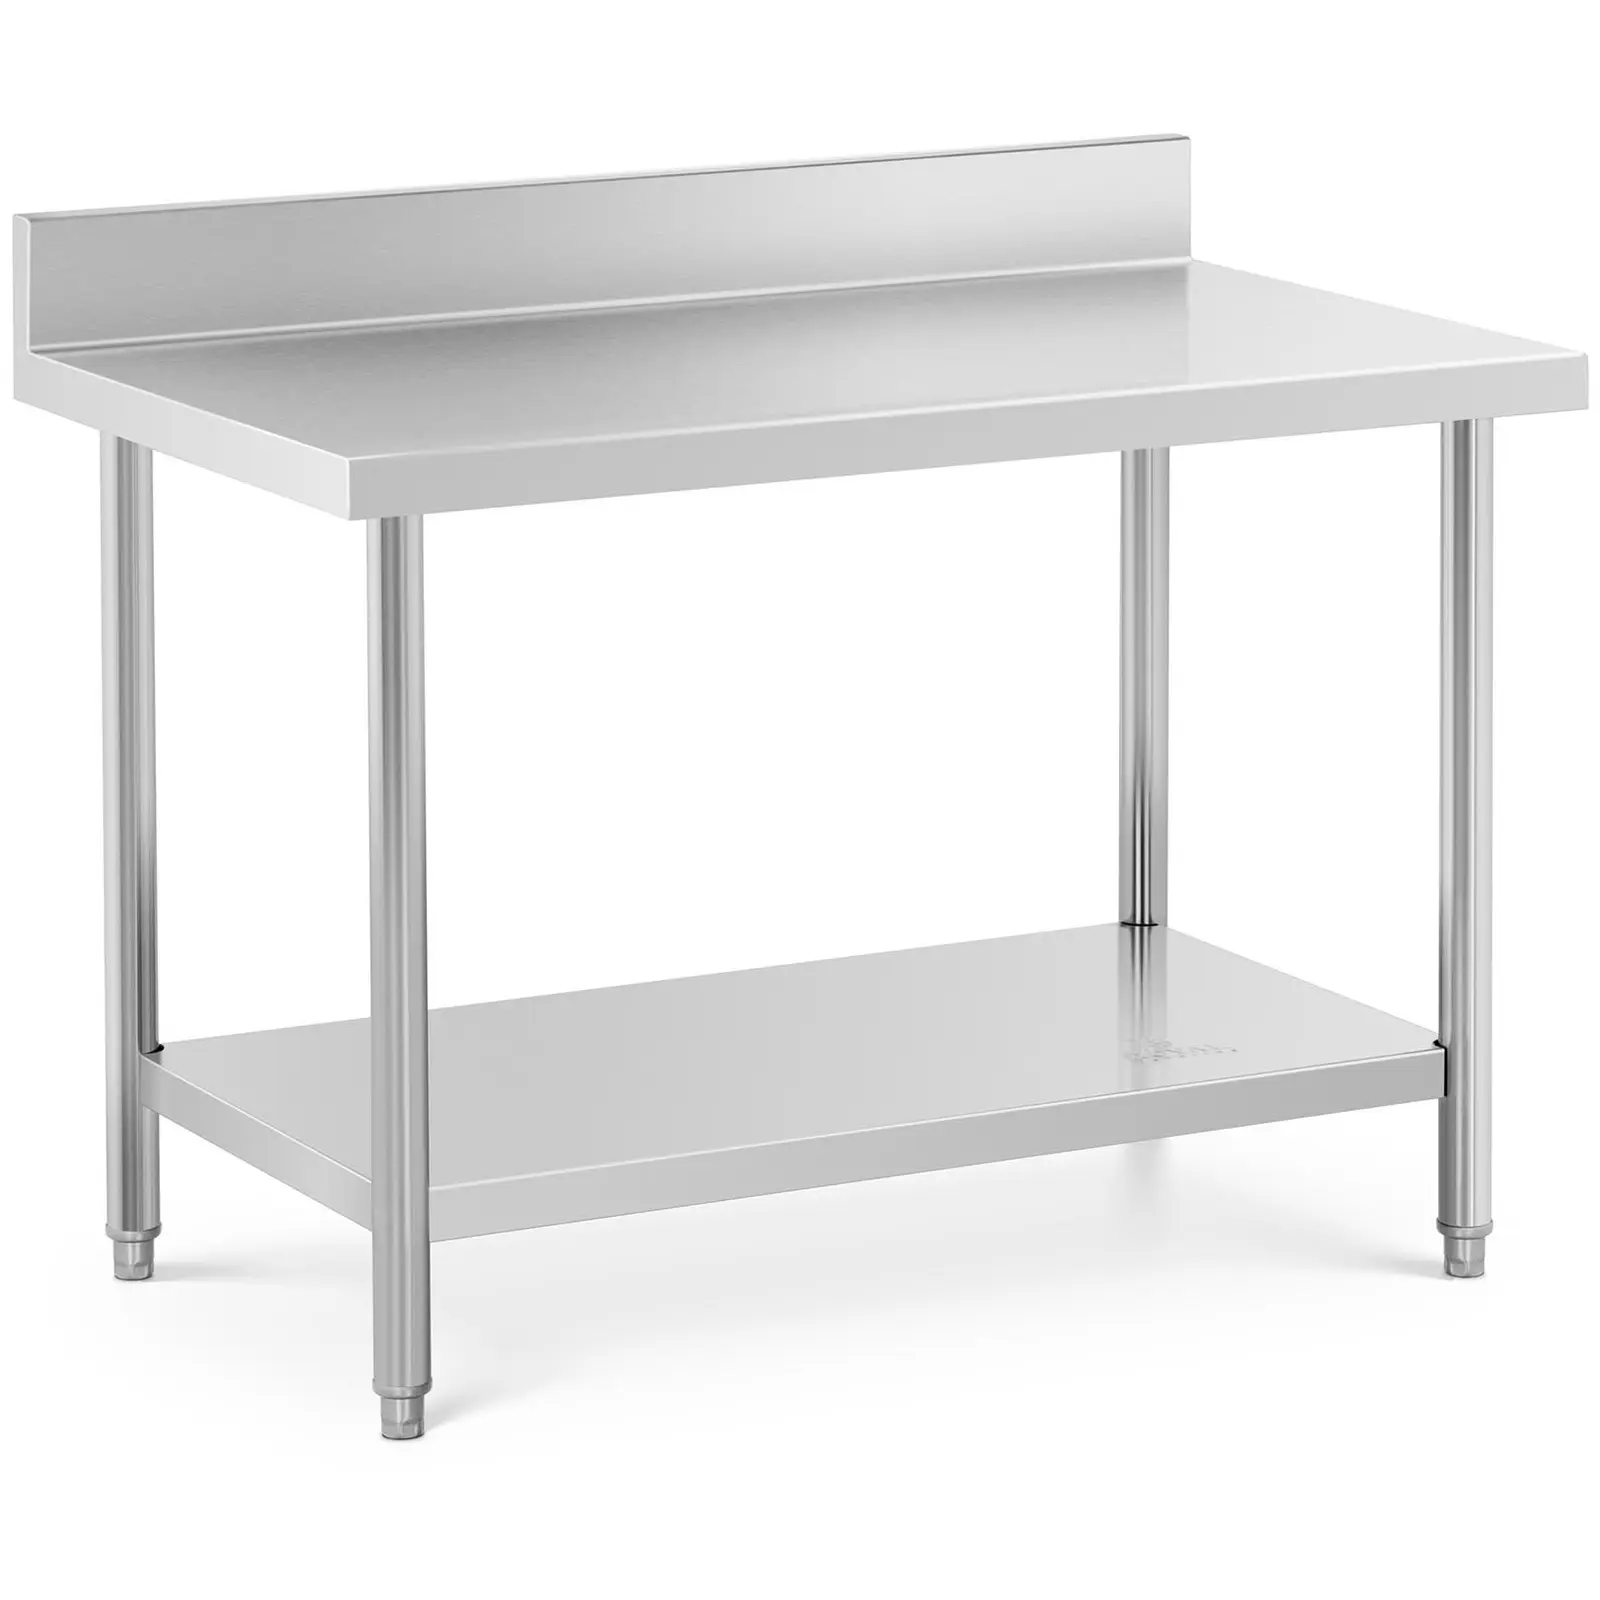 Pracovní stůl z ušlechtilé oceli 120 x 70 cm s lemem nosnost 115 kg - Pracovní stoly Royal Catering